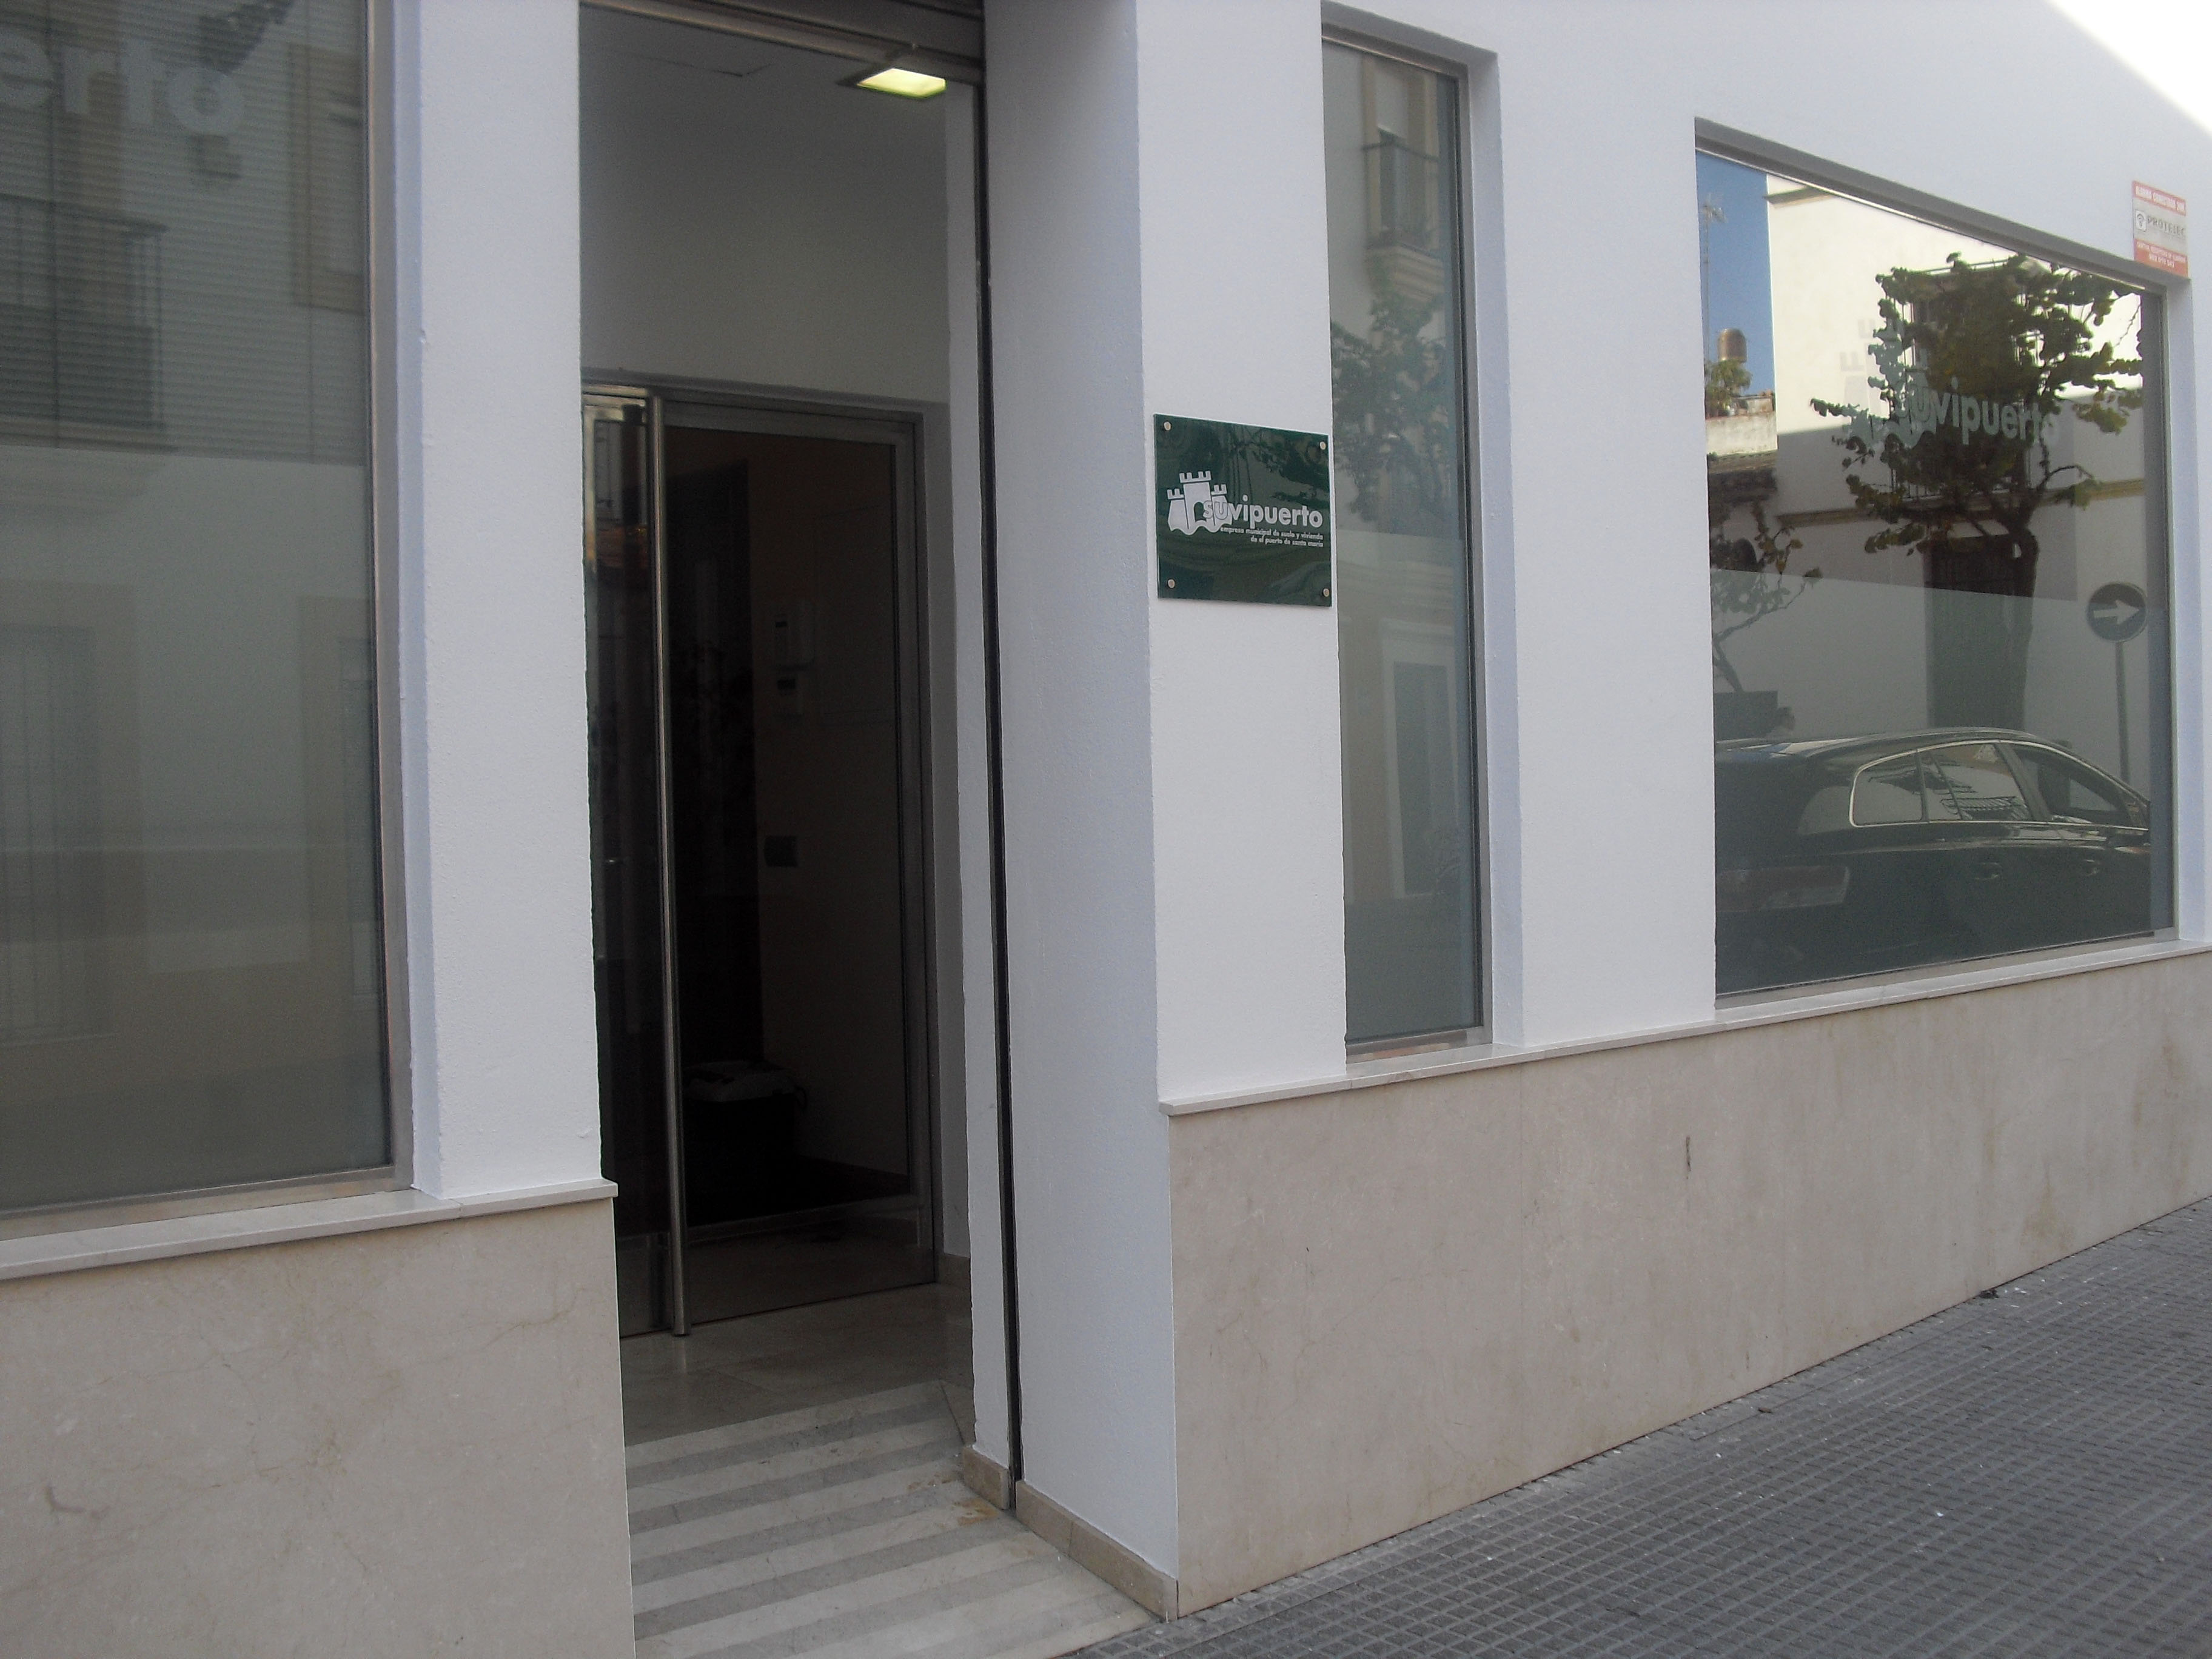 Suvipuerto ofrece información y orientación para solicitar las ayudas al alquiler de la Junta de Andalucía